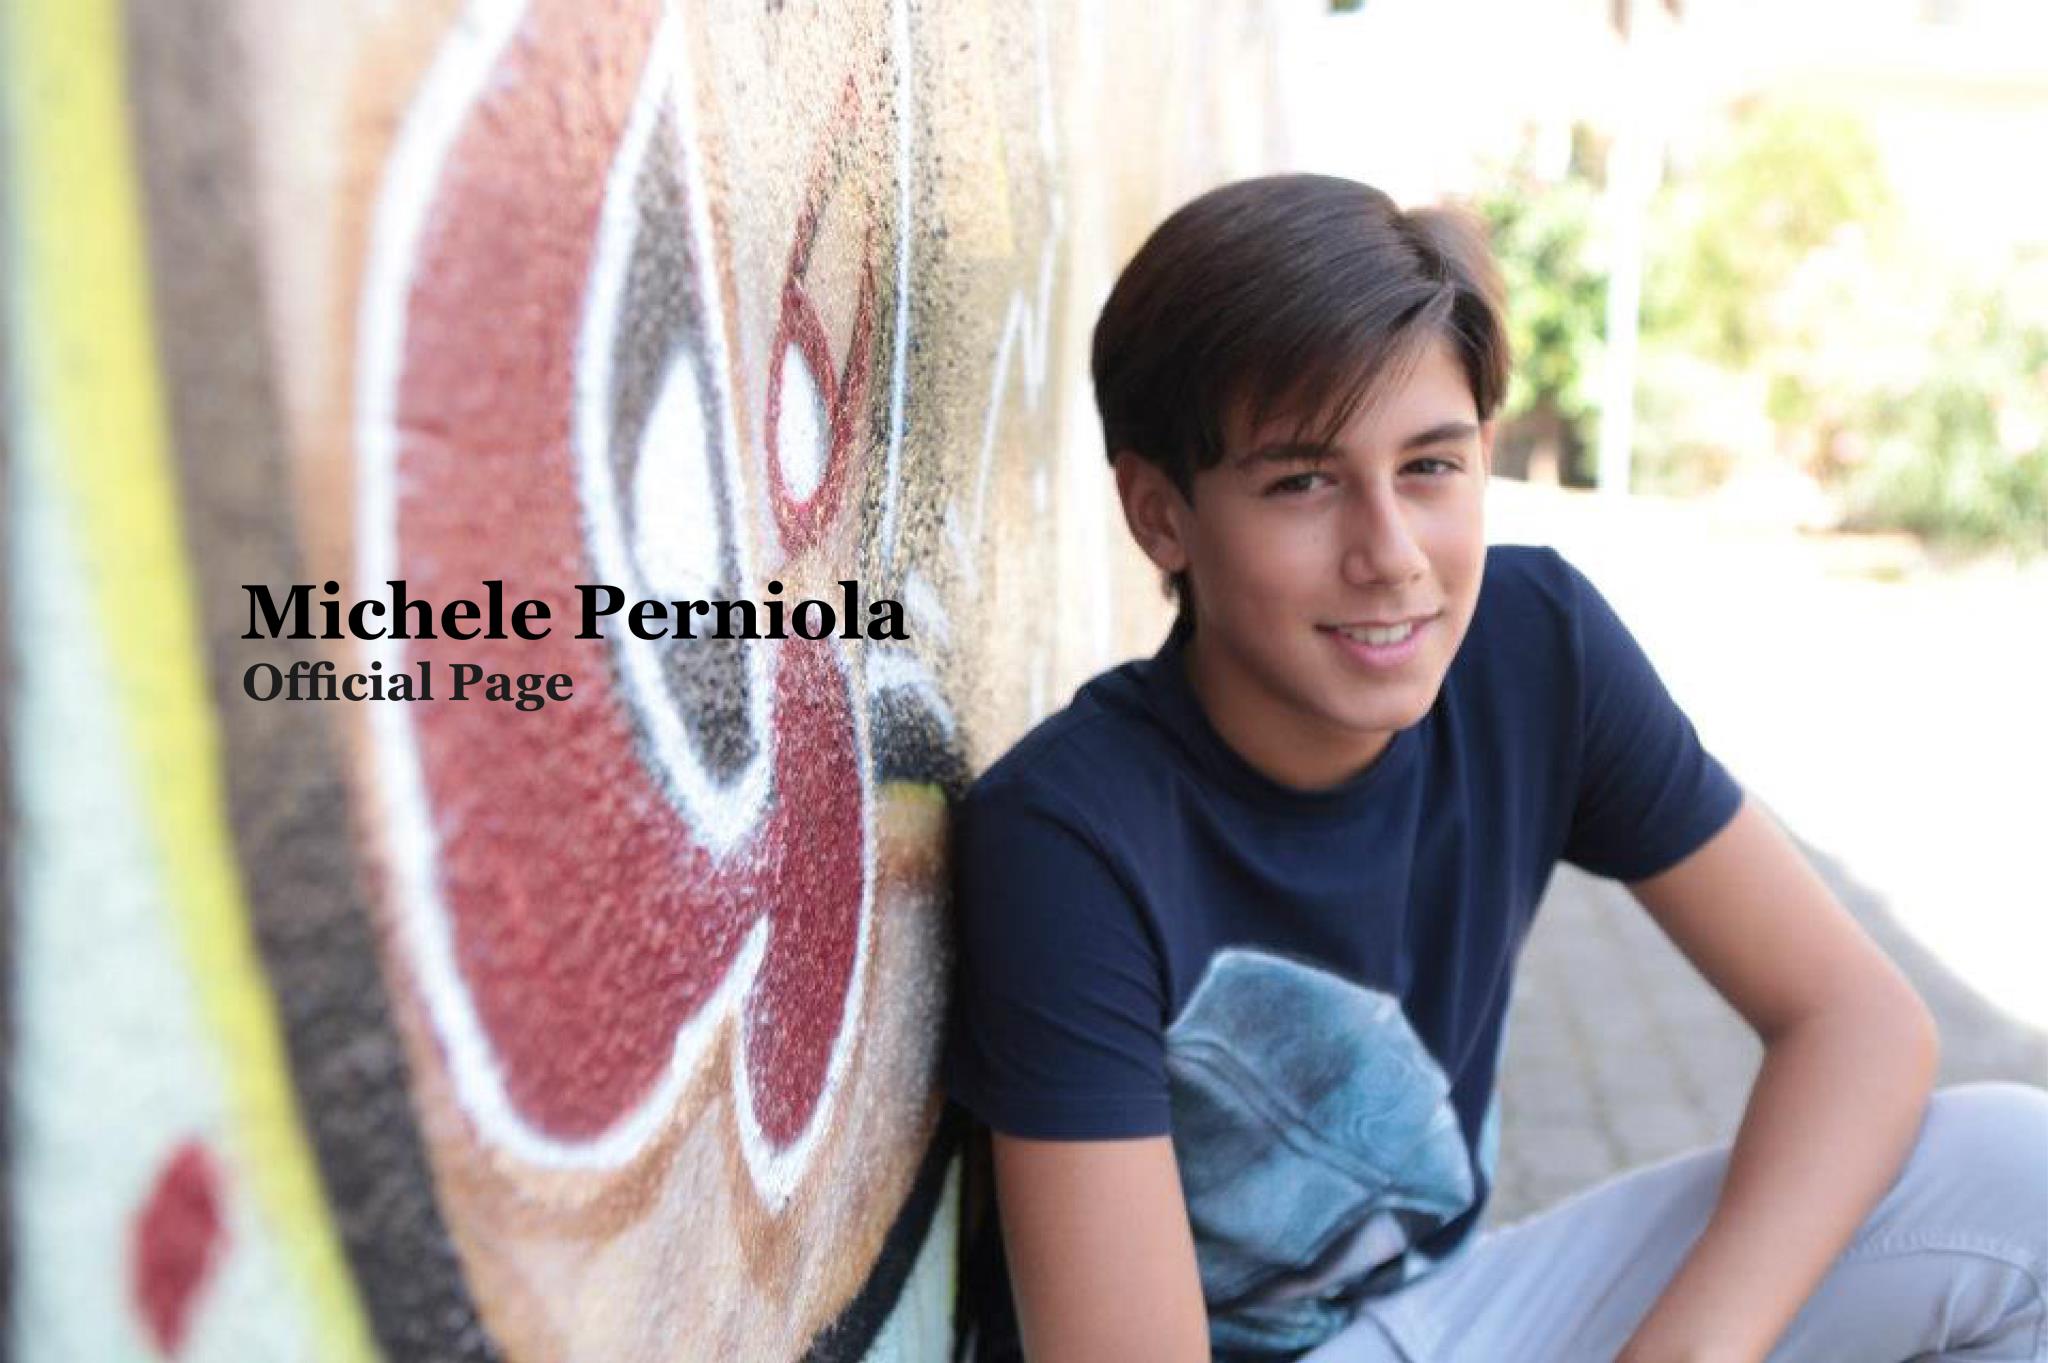 Junior Eurovision: Michele Perniola to represent San Marino!